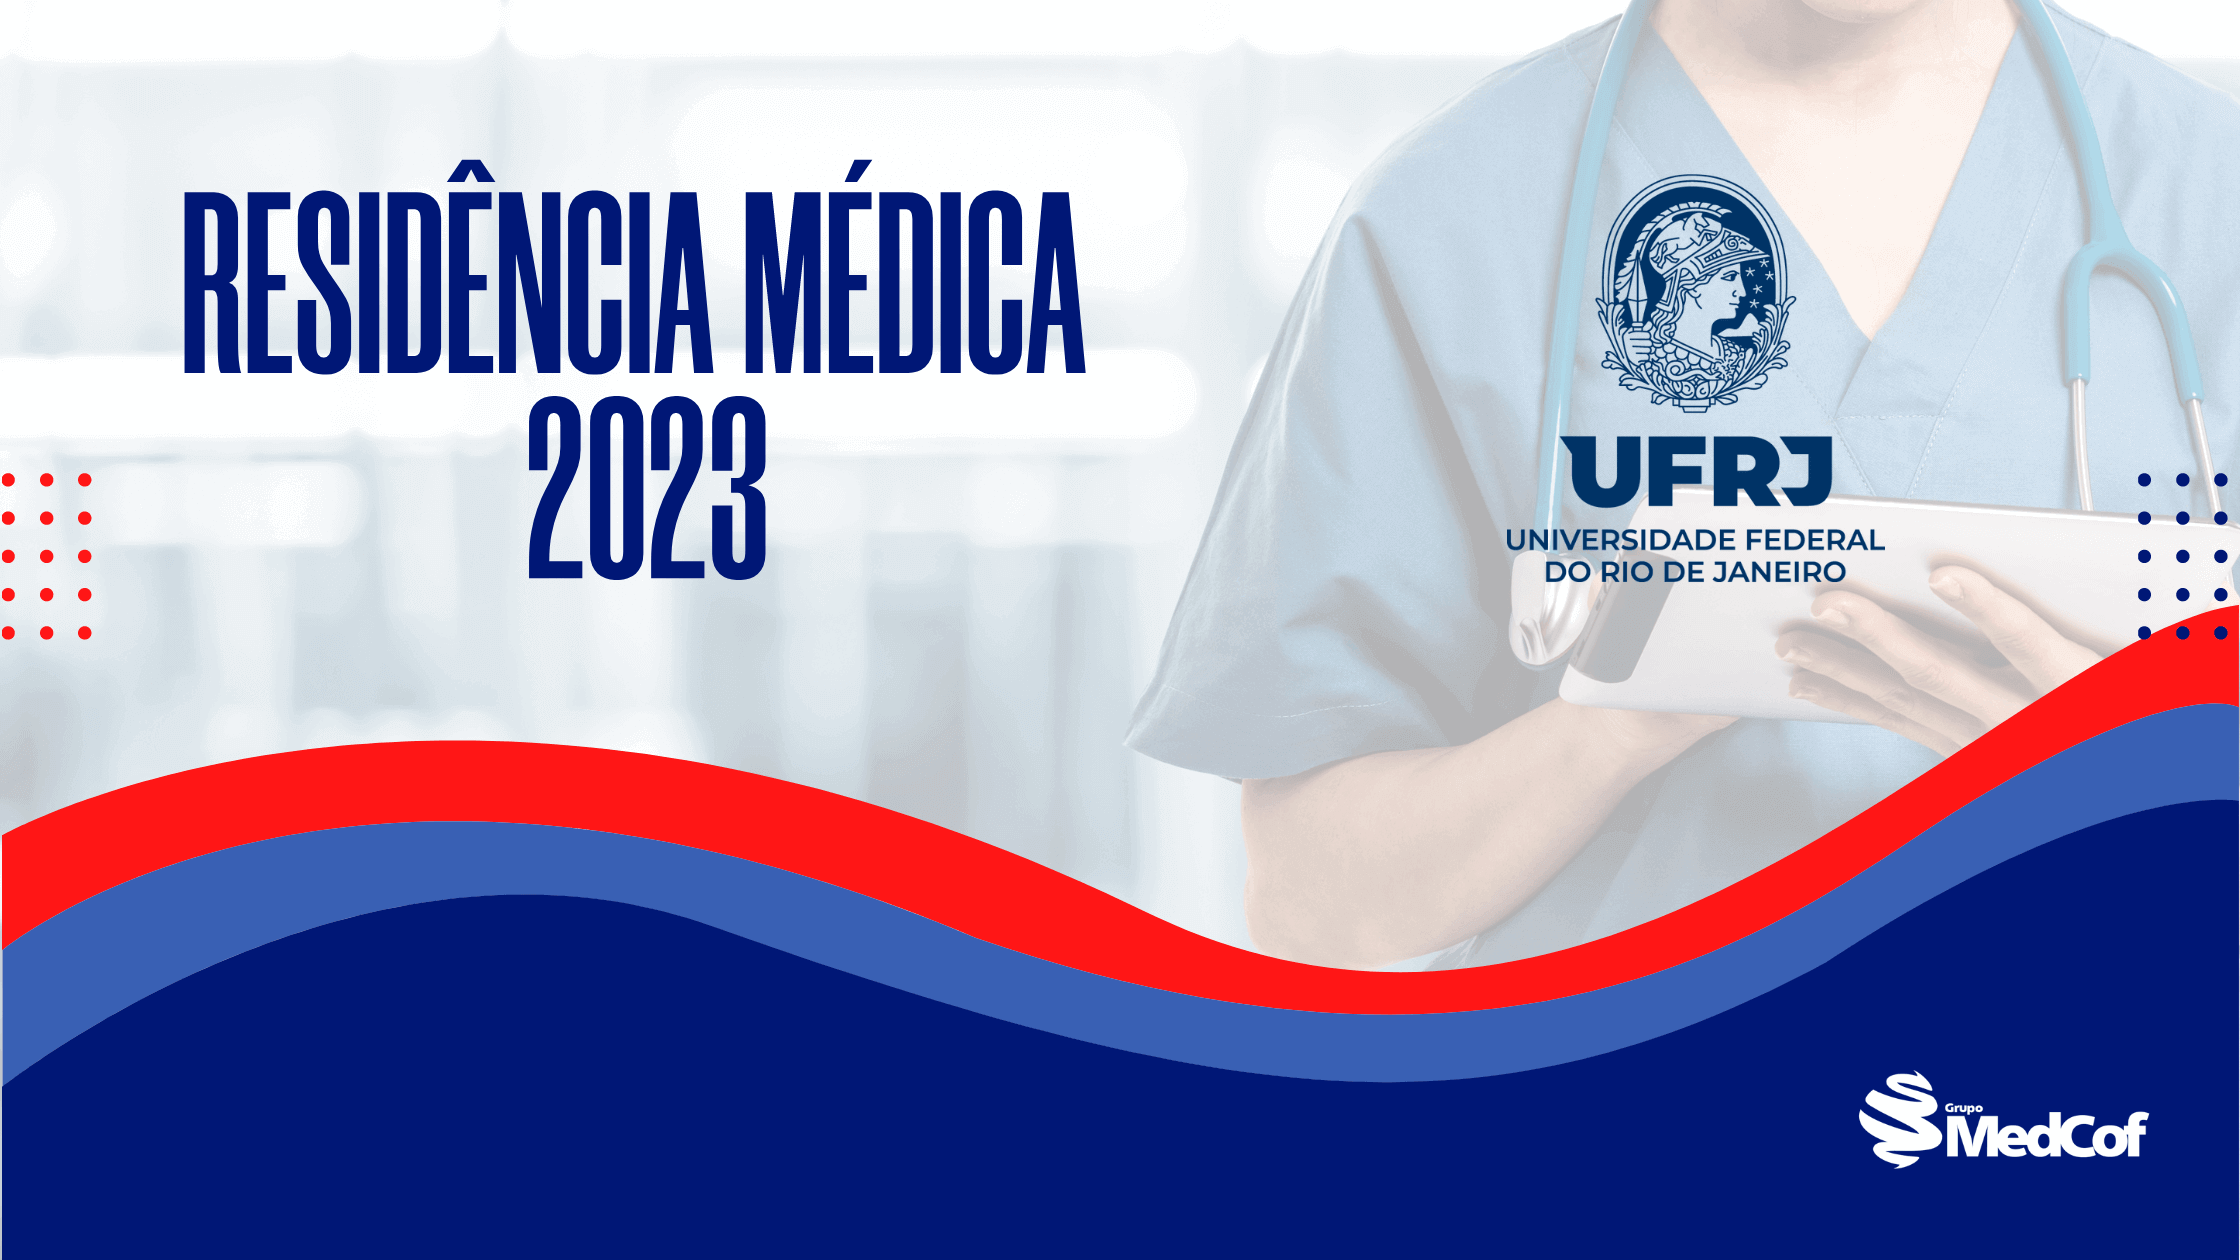 Notícias / Médica formada pelo UNIFAGOC é aprovada em uma das quatro vagas  para residência de neurologia da UFMG